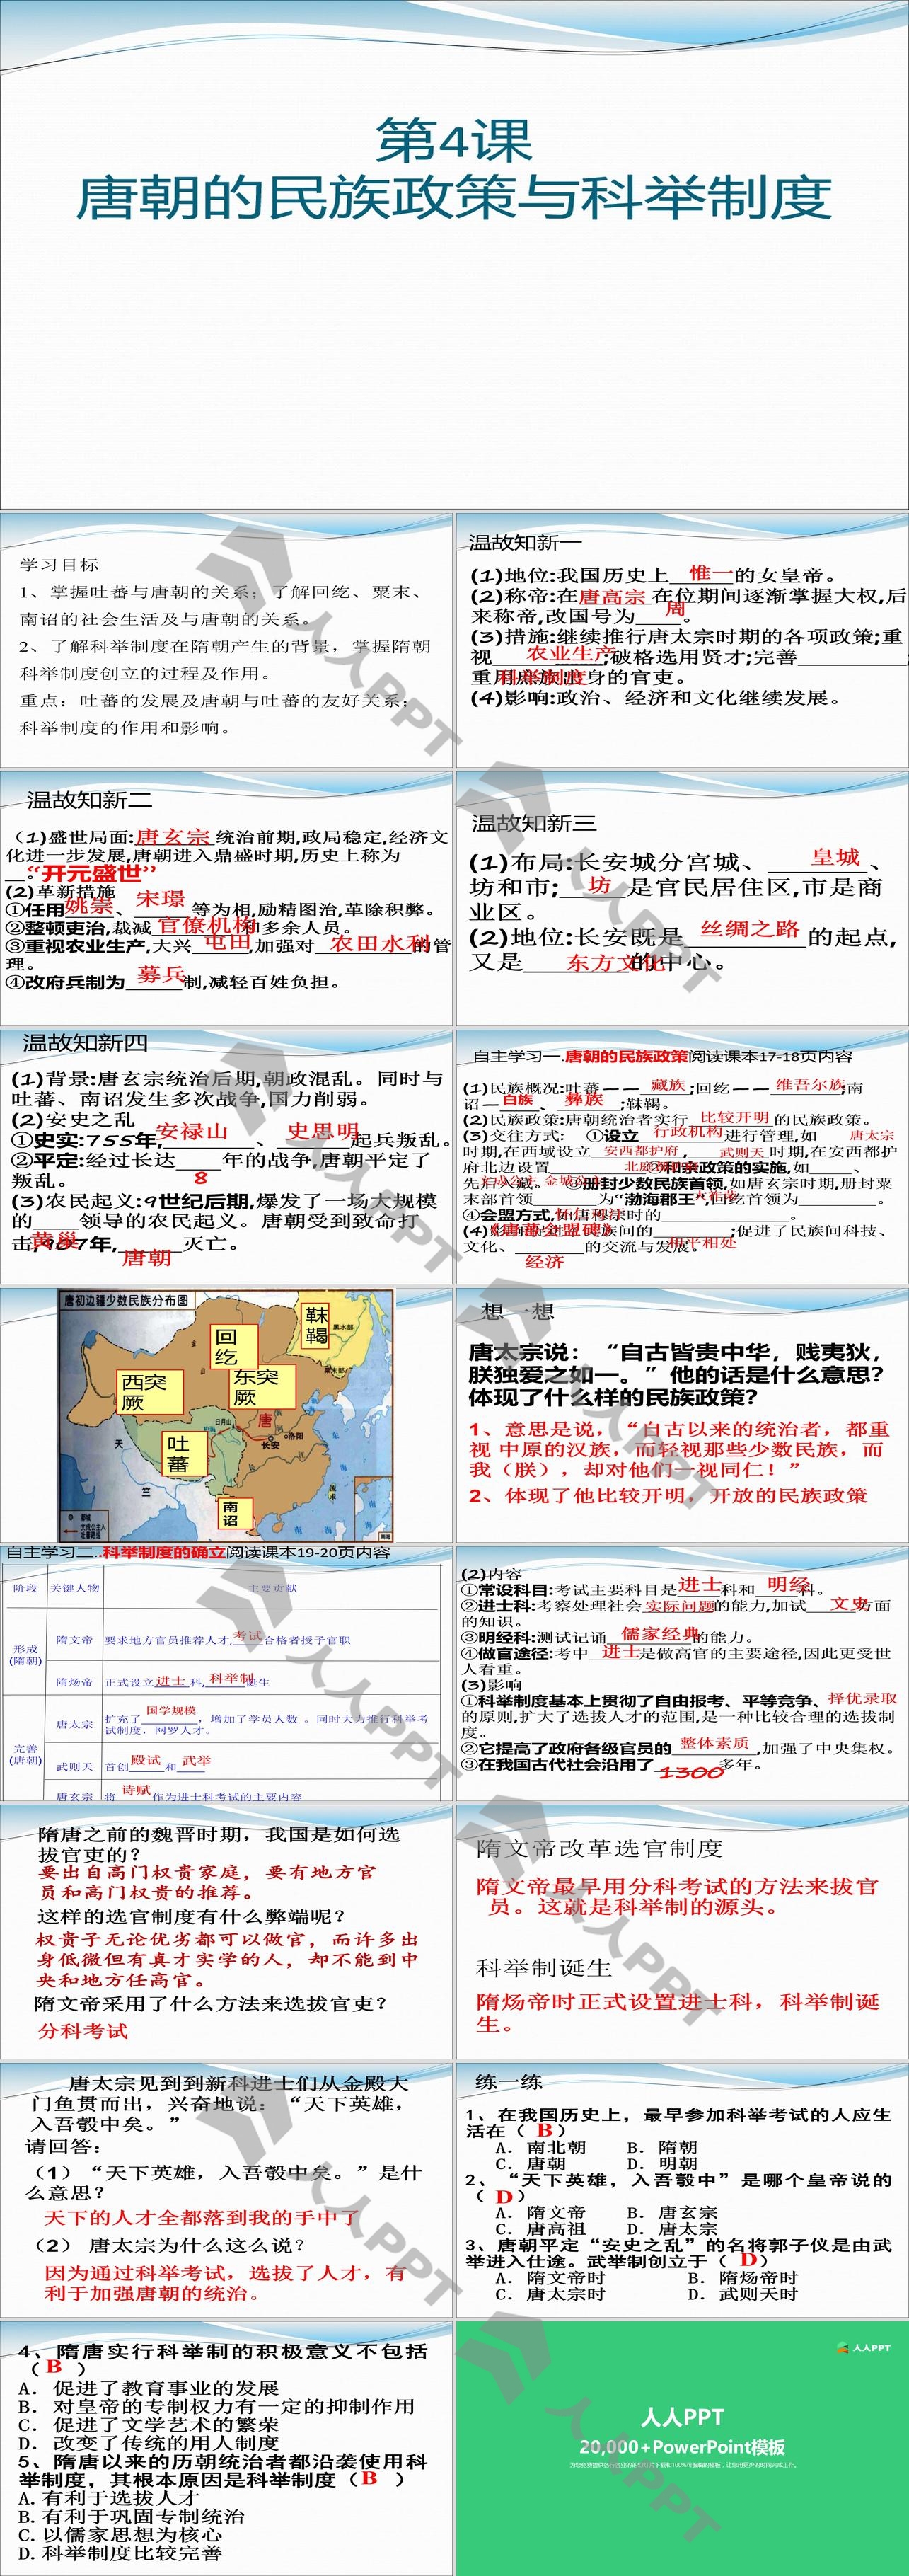 《唐朝的民族政策与科举制度》繁荣与开放的社会―隋唐PPT课件长图